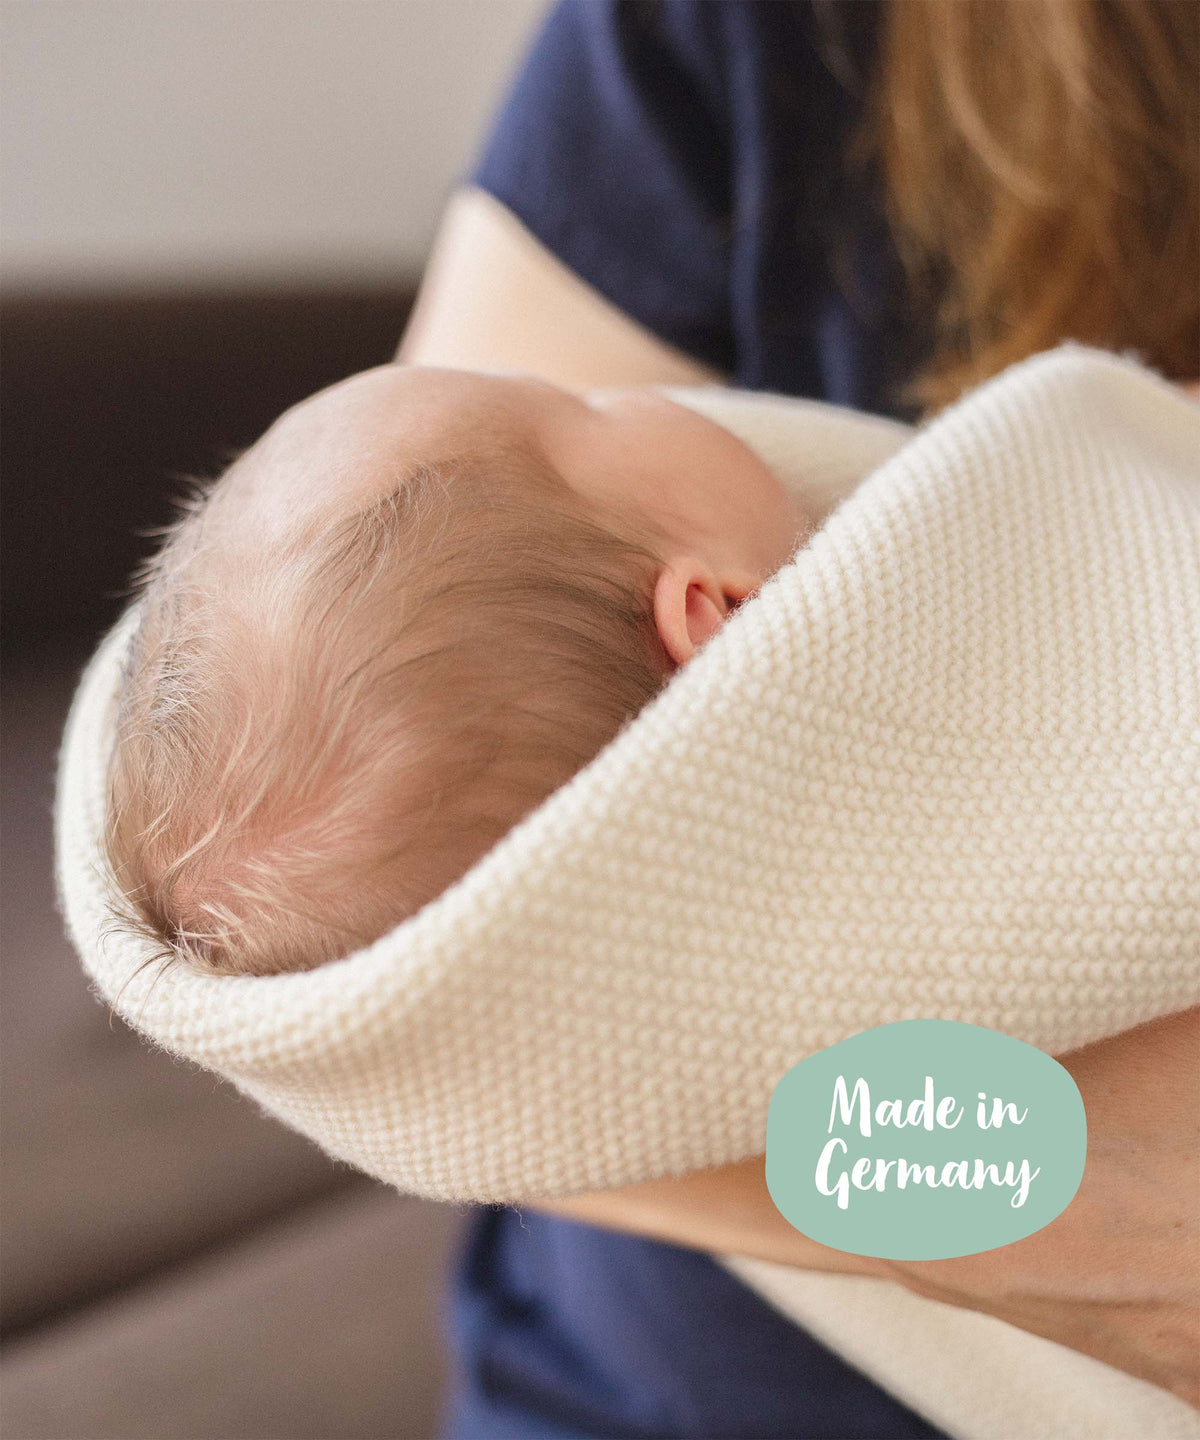 Babydecke aus Bio-Lammwolle ist made in Germany, Baby eingewickelt in Decke.